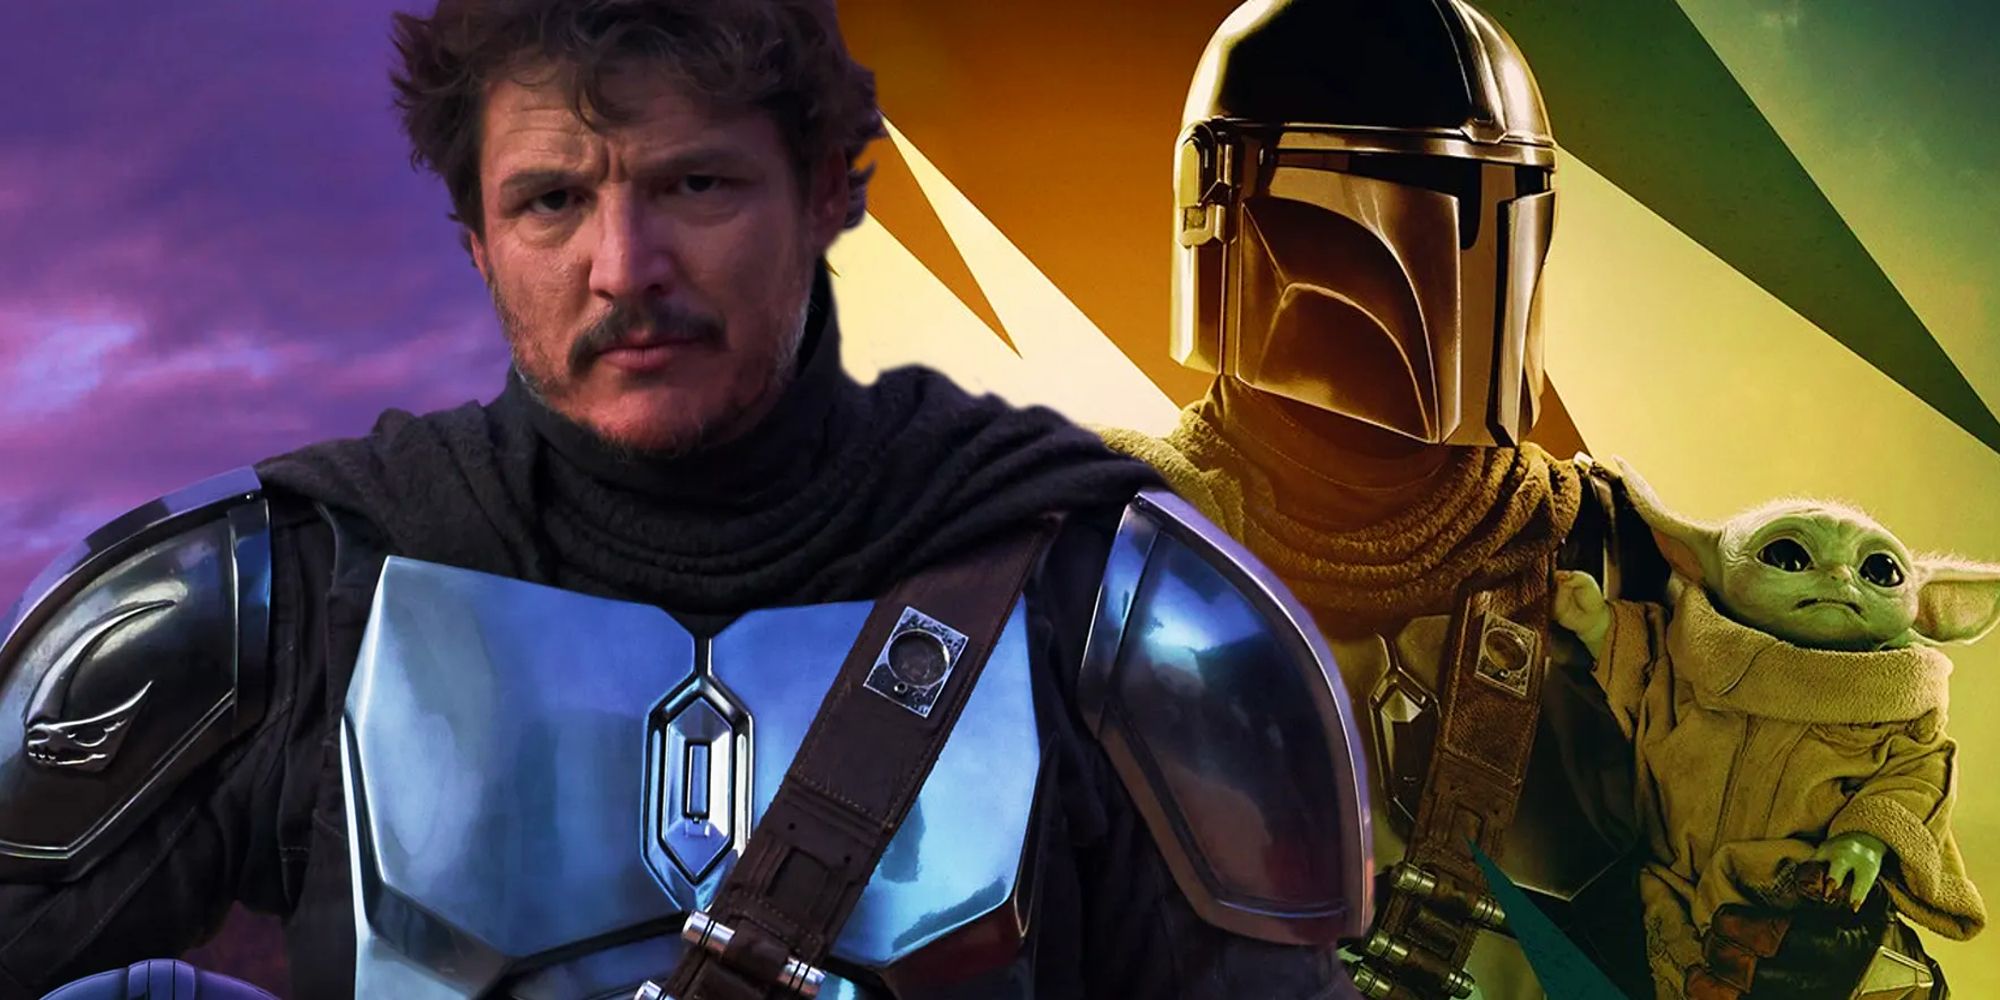 “Nunca volveremos a ver al mandaloriano sin casco”: los fanáticos de Star Wars reaccionan al casting del MCU de Pedro Pascal